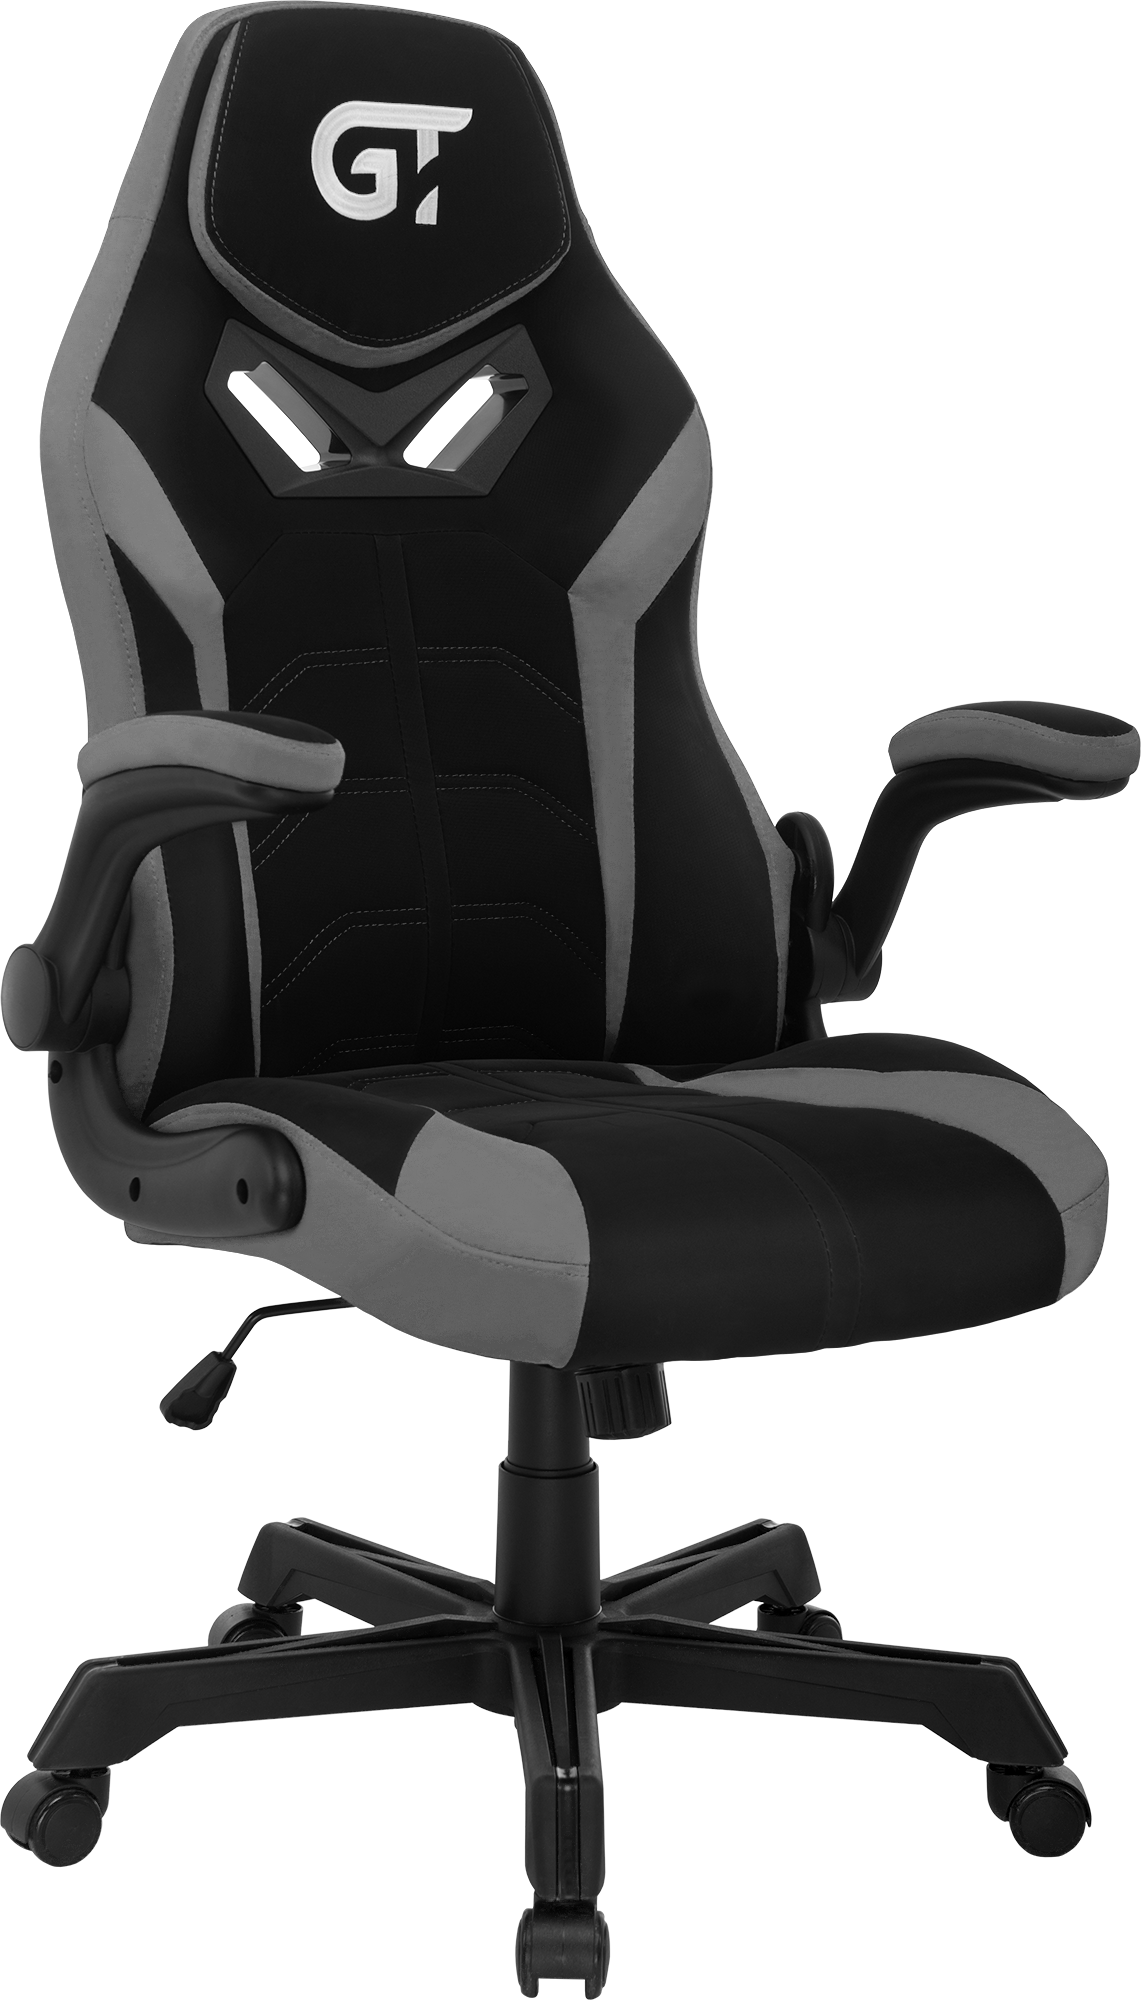 Геймерское кресло GT Racer черное с серым (X-2656 Black/Gray) - фото 2